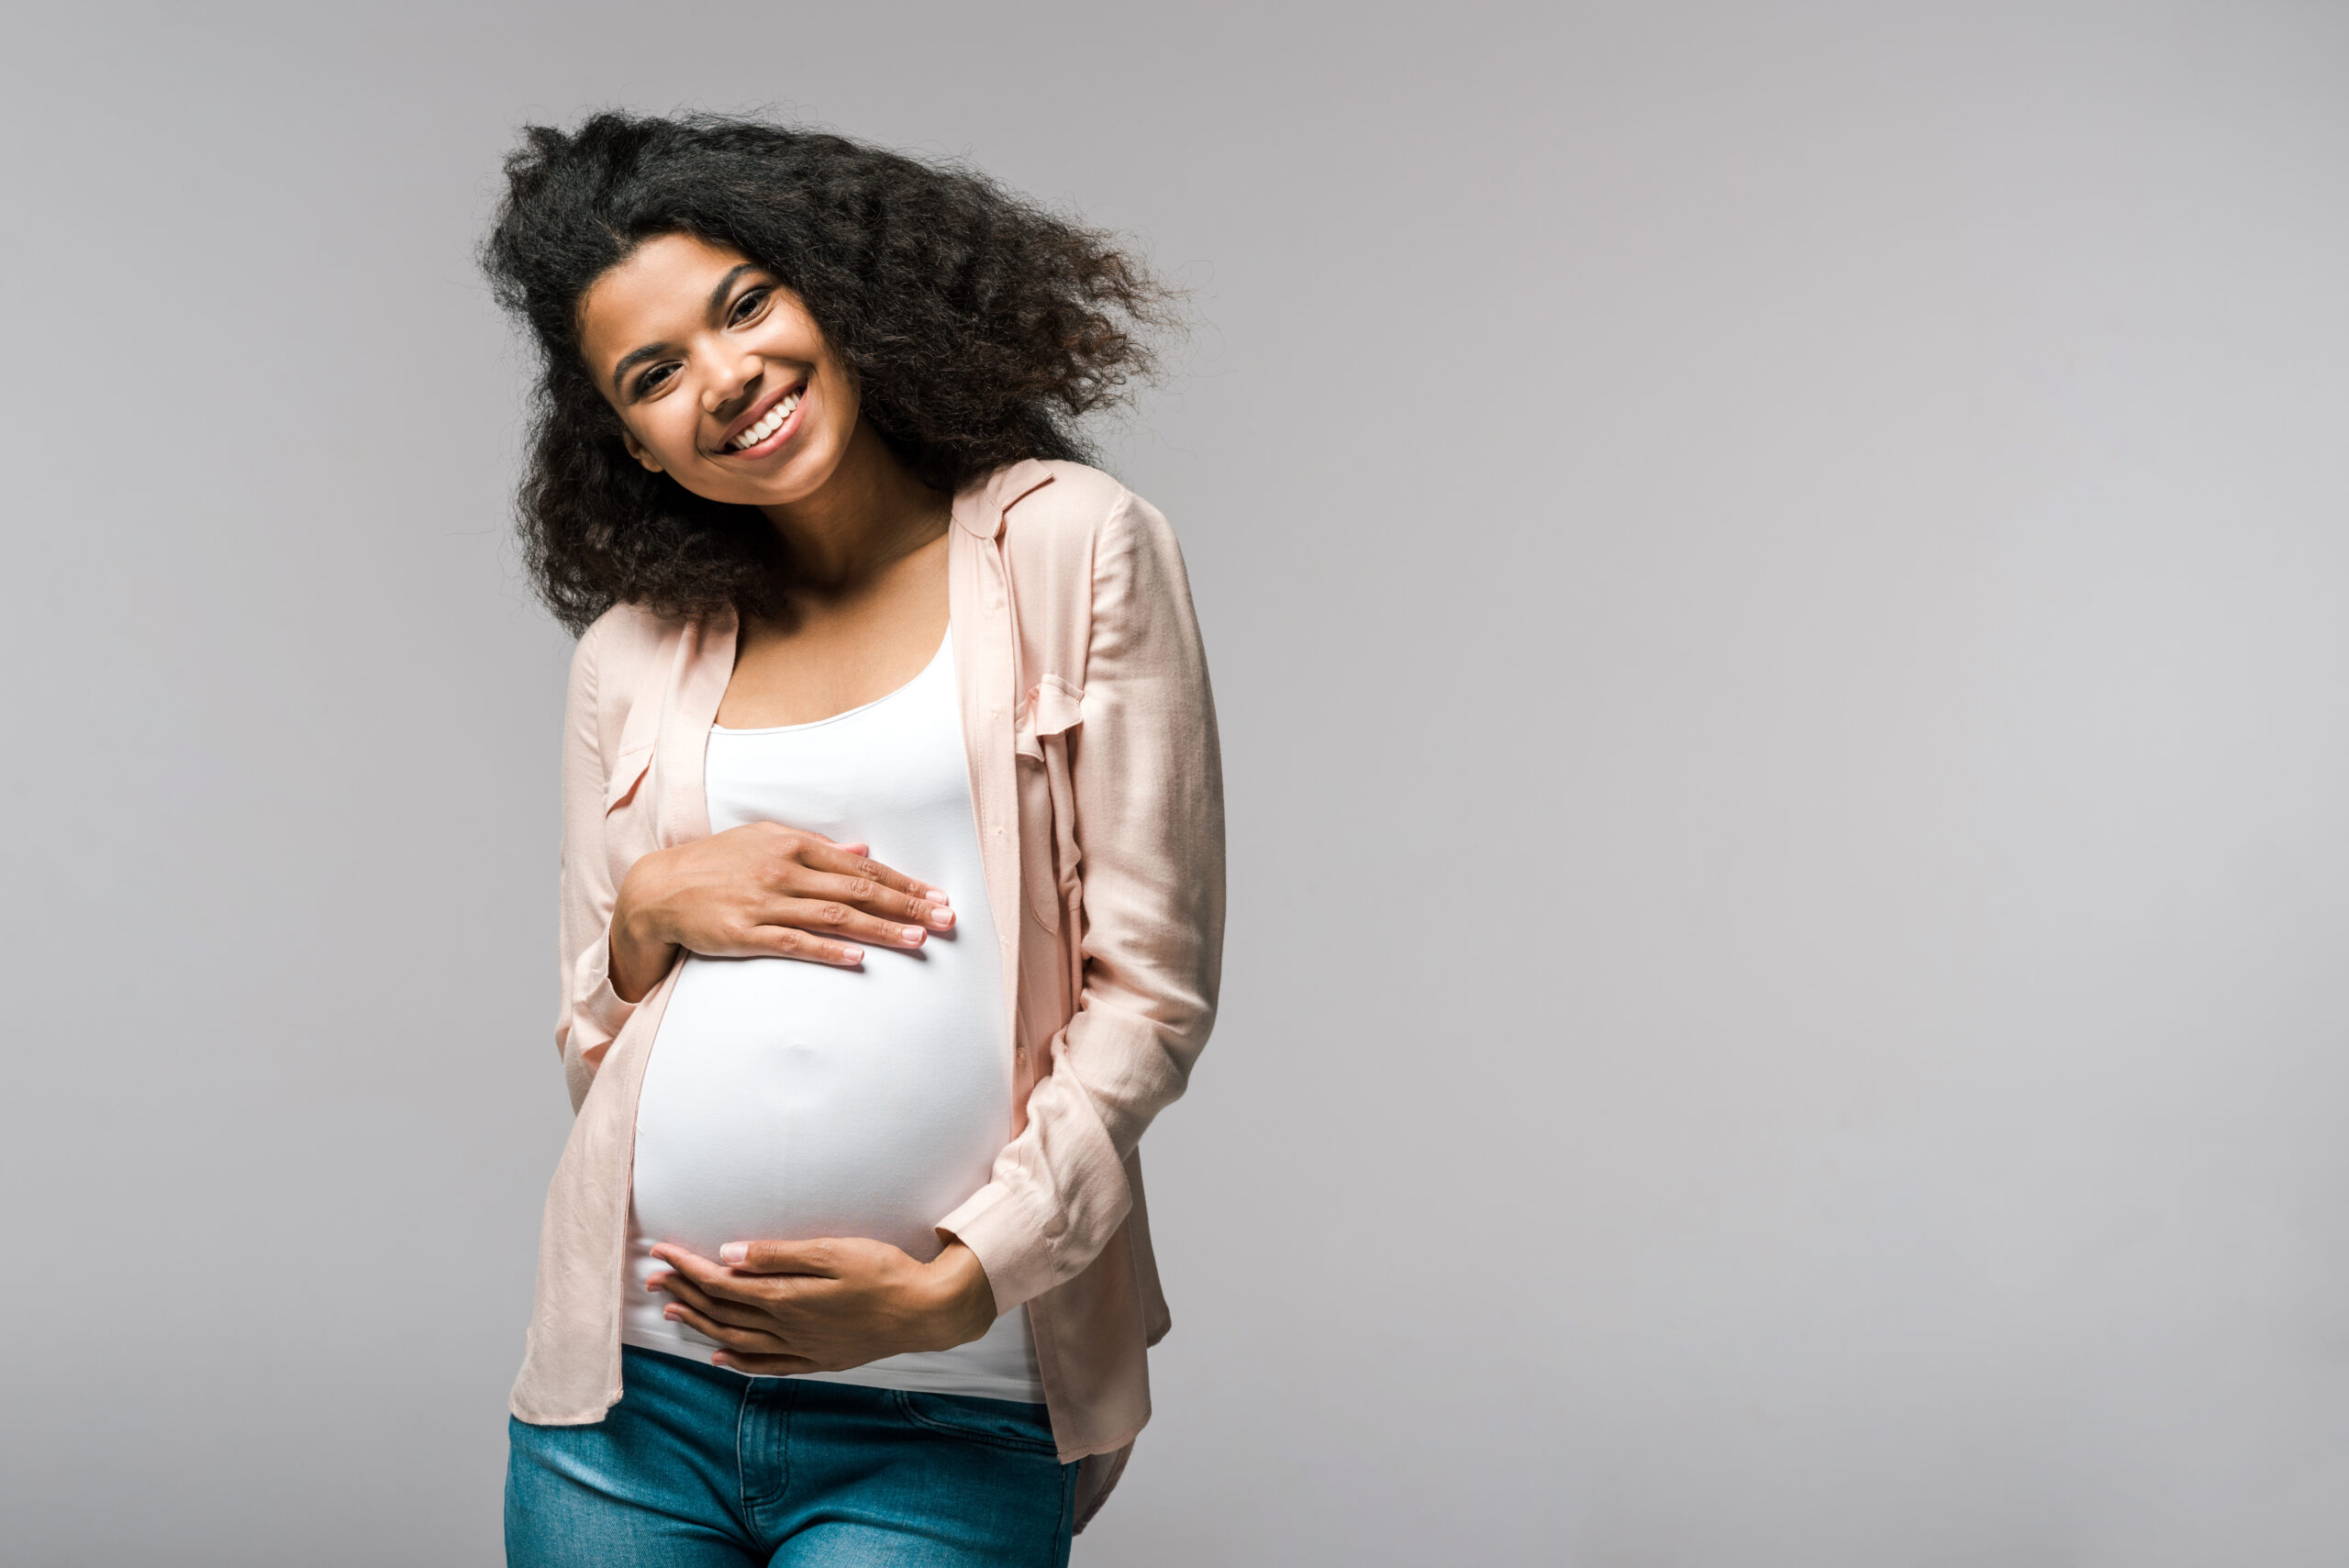 Mujer embarazada sonriente sosteniendo su vientre, vestida con un top blanco y una rebeca ligera.